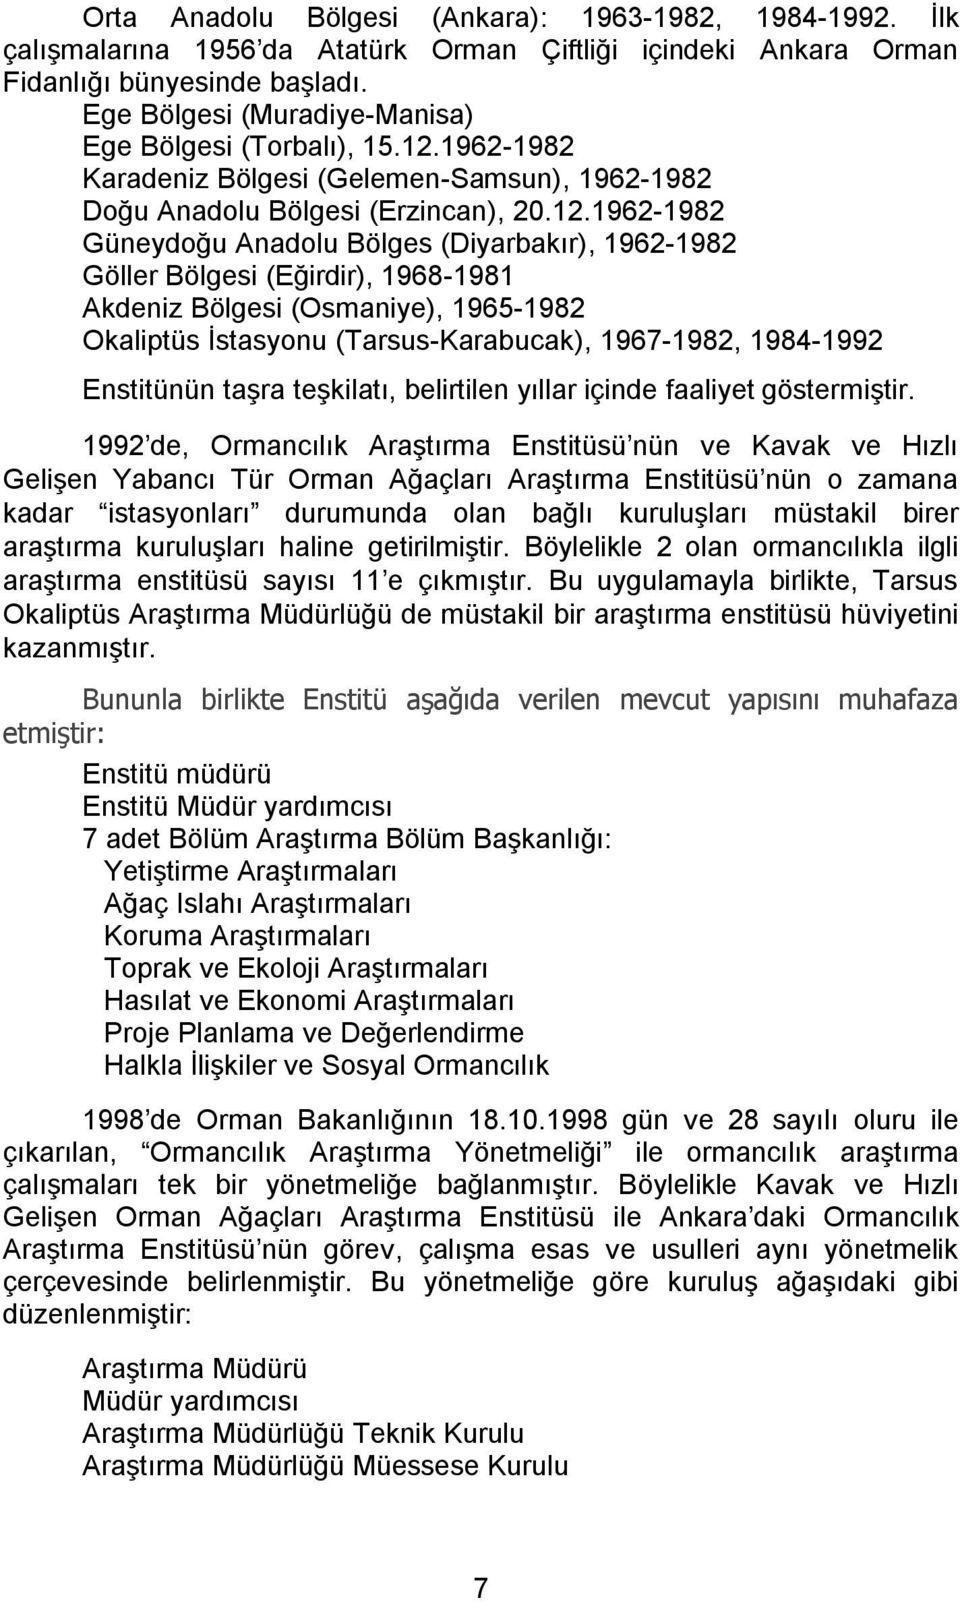 1962-1982 Karadeniz Bölgesi (Gelemen-Samsun), 1962-1982 Doğu Anadolu Bölgesi (Erzincan), 20.12.